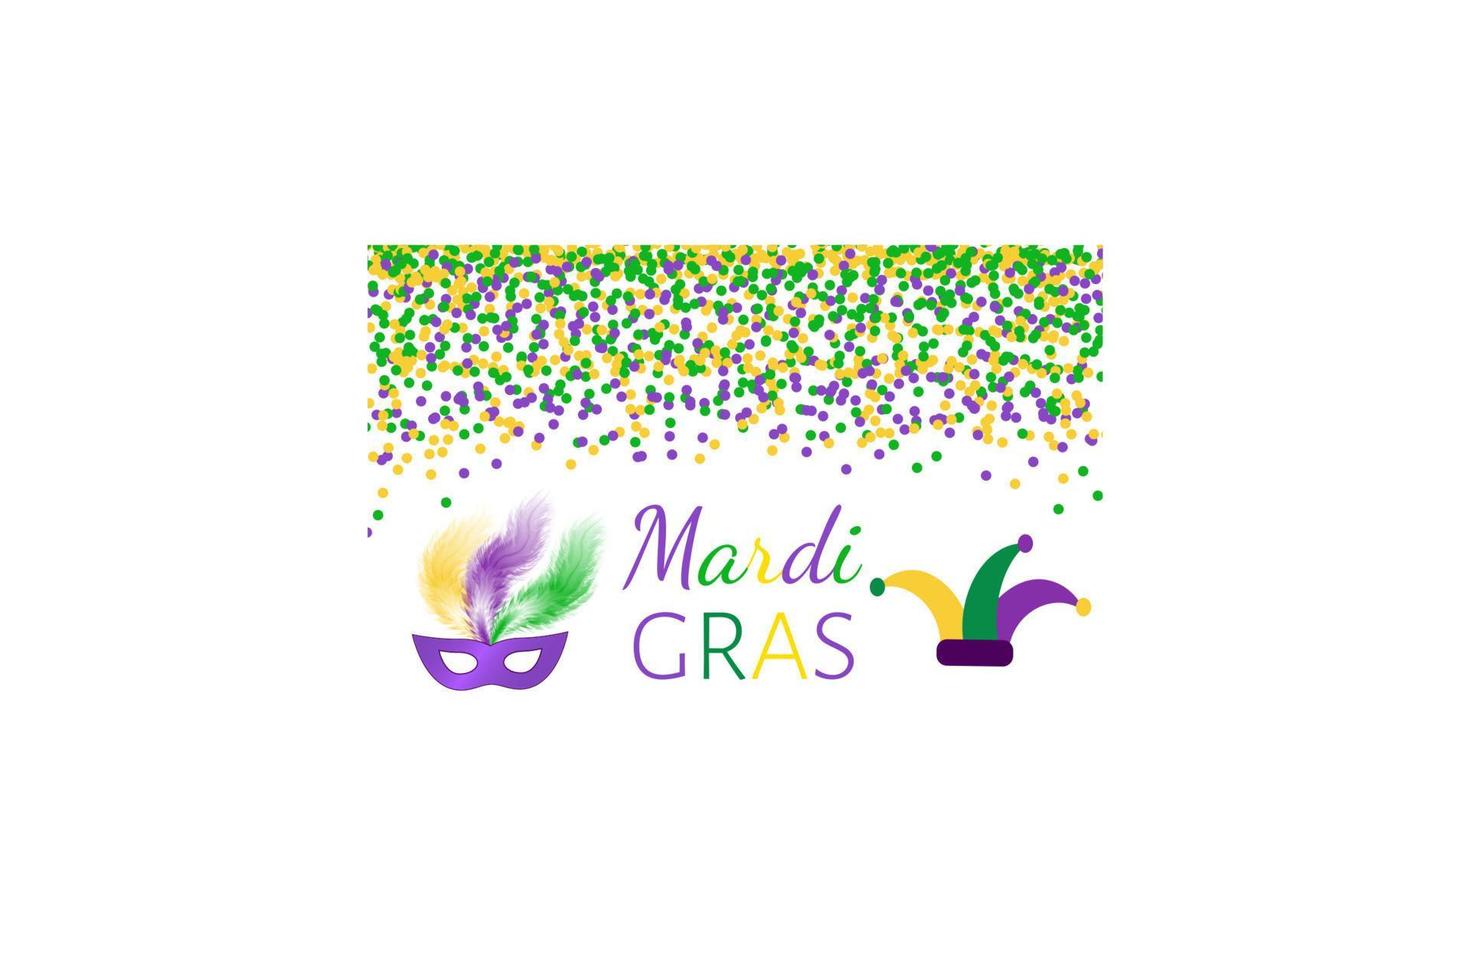 fond de vecteur de mardi gras carnaval avec des confettis verts, violets et jaunes. modèle de conception facile à modifier pour vos projets.